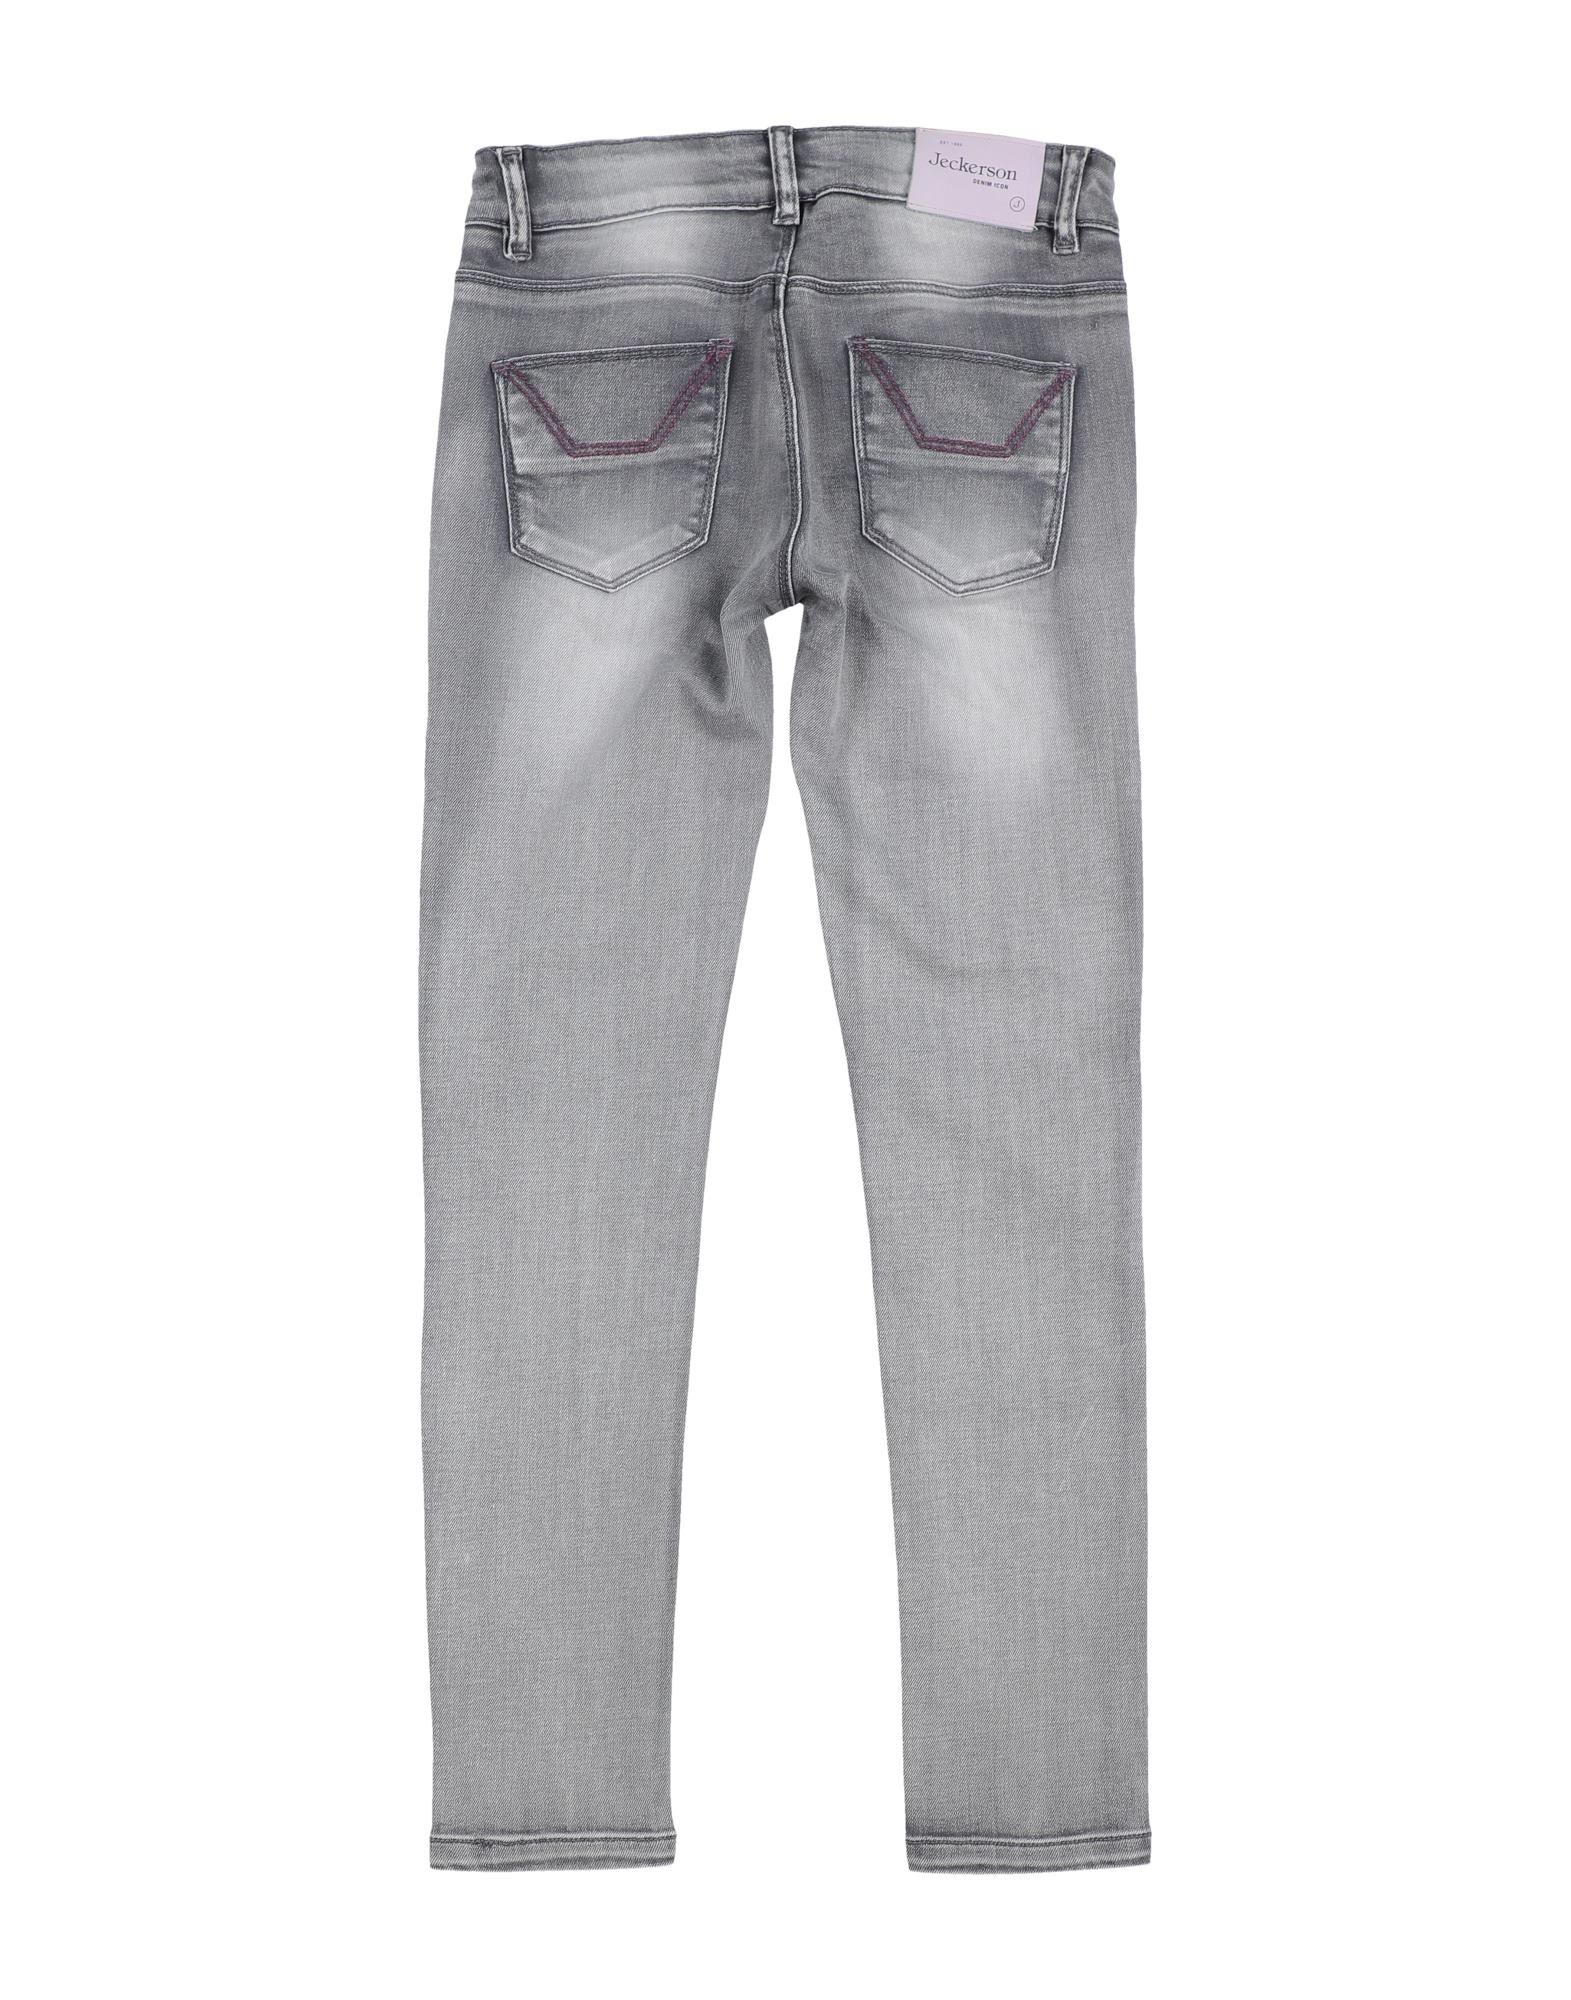 Jeckerson Kids' Jeans In Grey